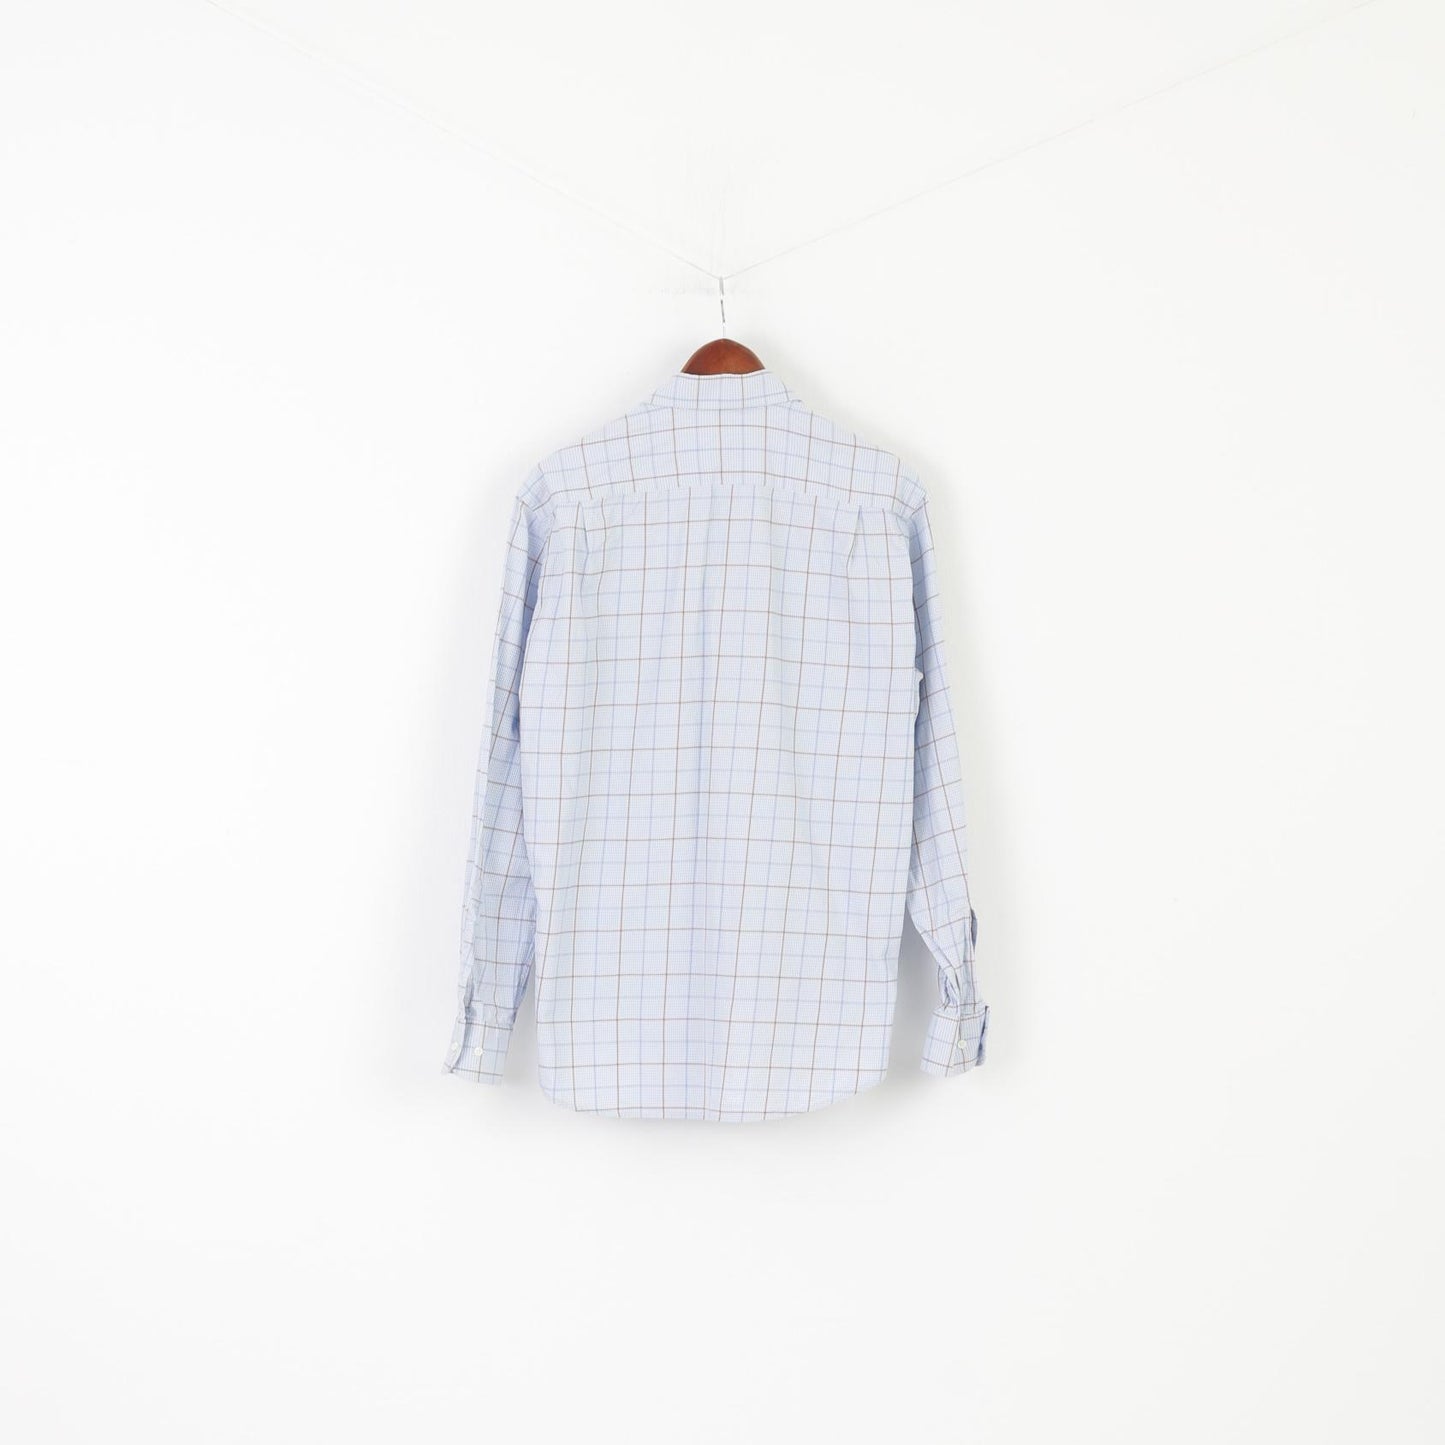 Hugo Boss Camicia casual da uomo 40 15 3/4 XL Top a maniche lunghe in cotone a quadri blu